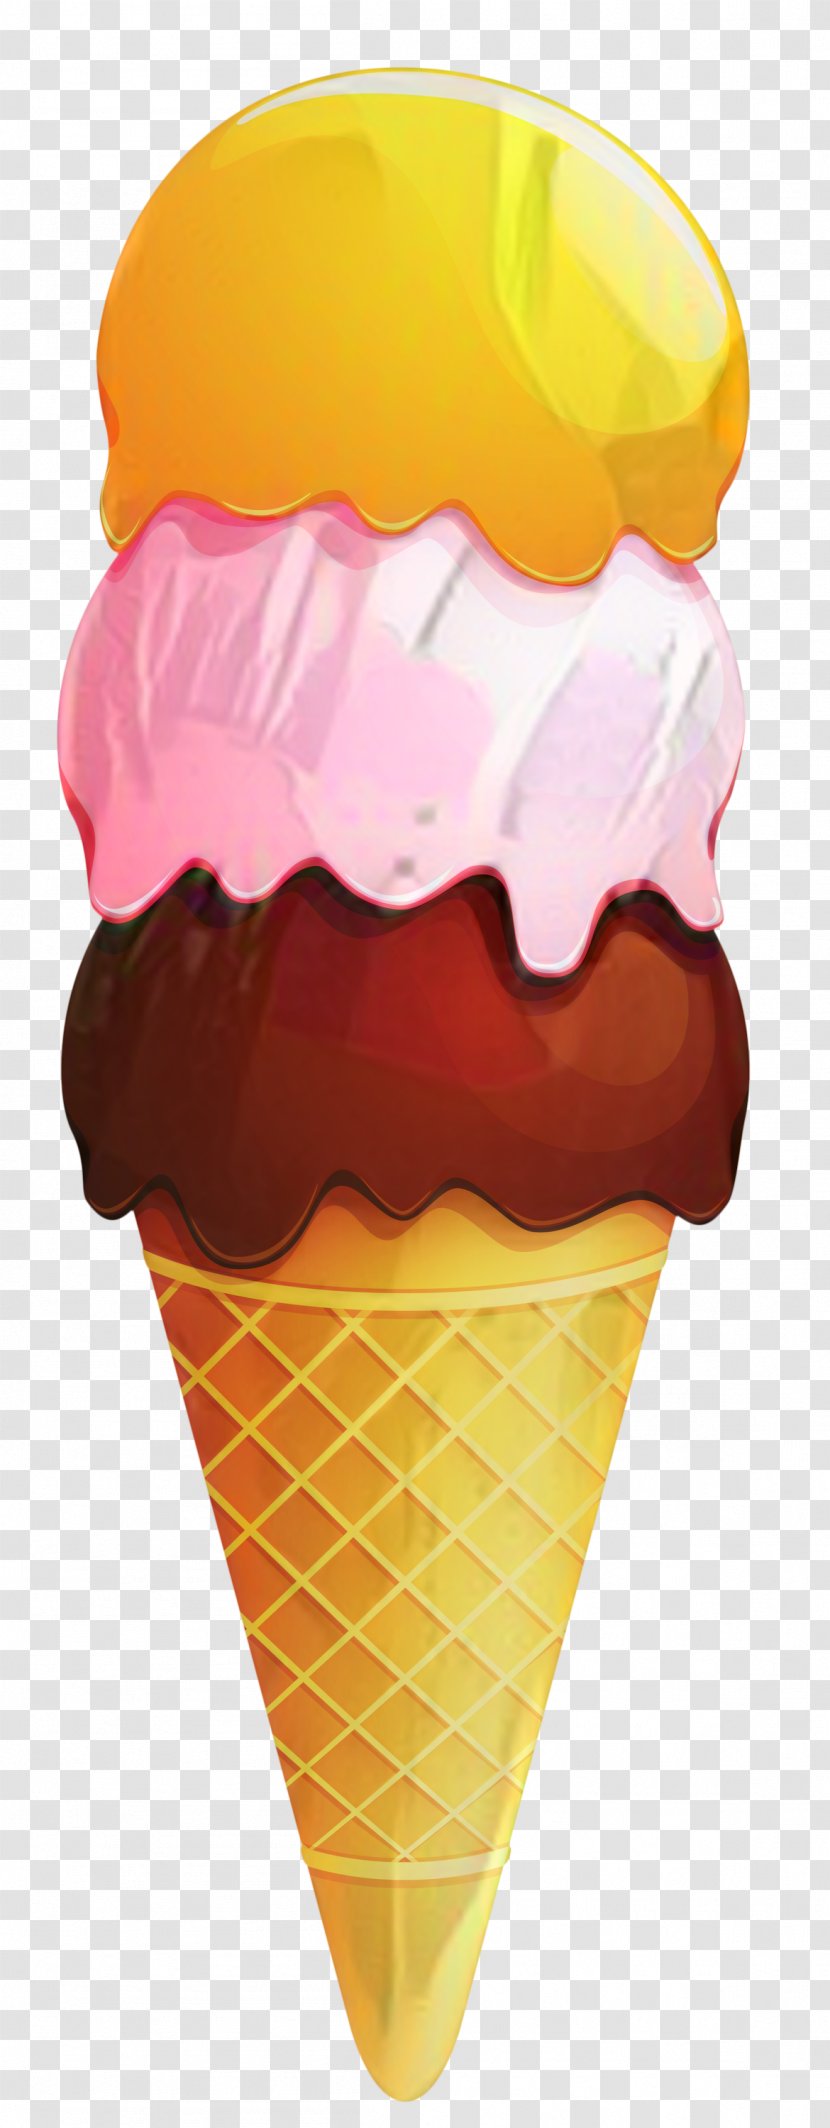 Ice Cream Cones Neapolitan Italian - Dairy - Food Transparent PNG